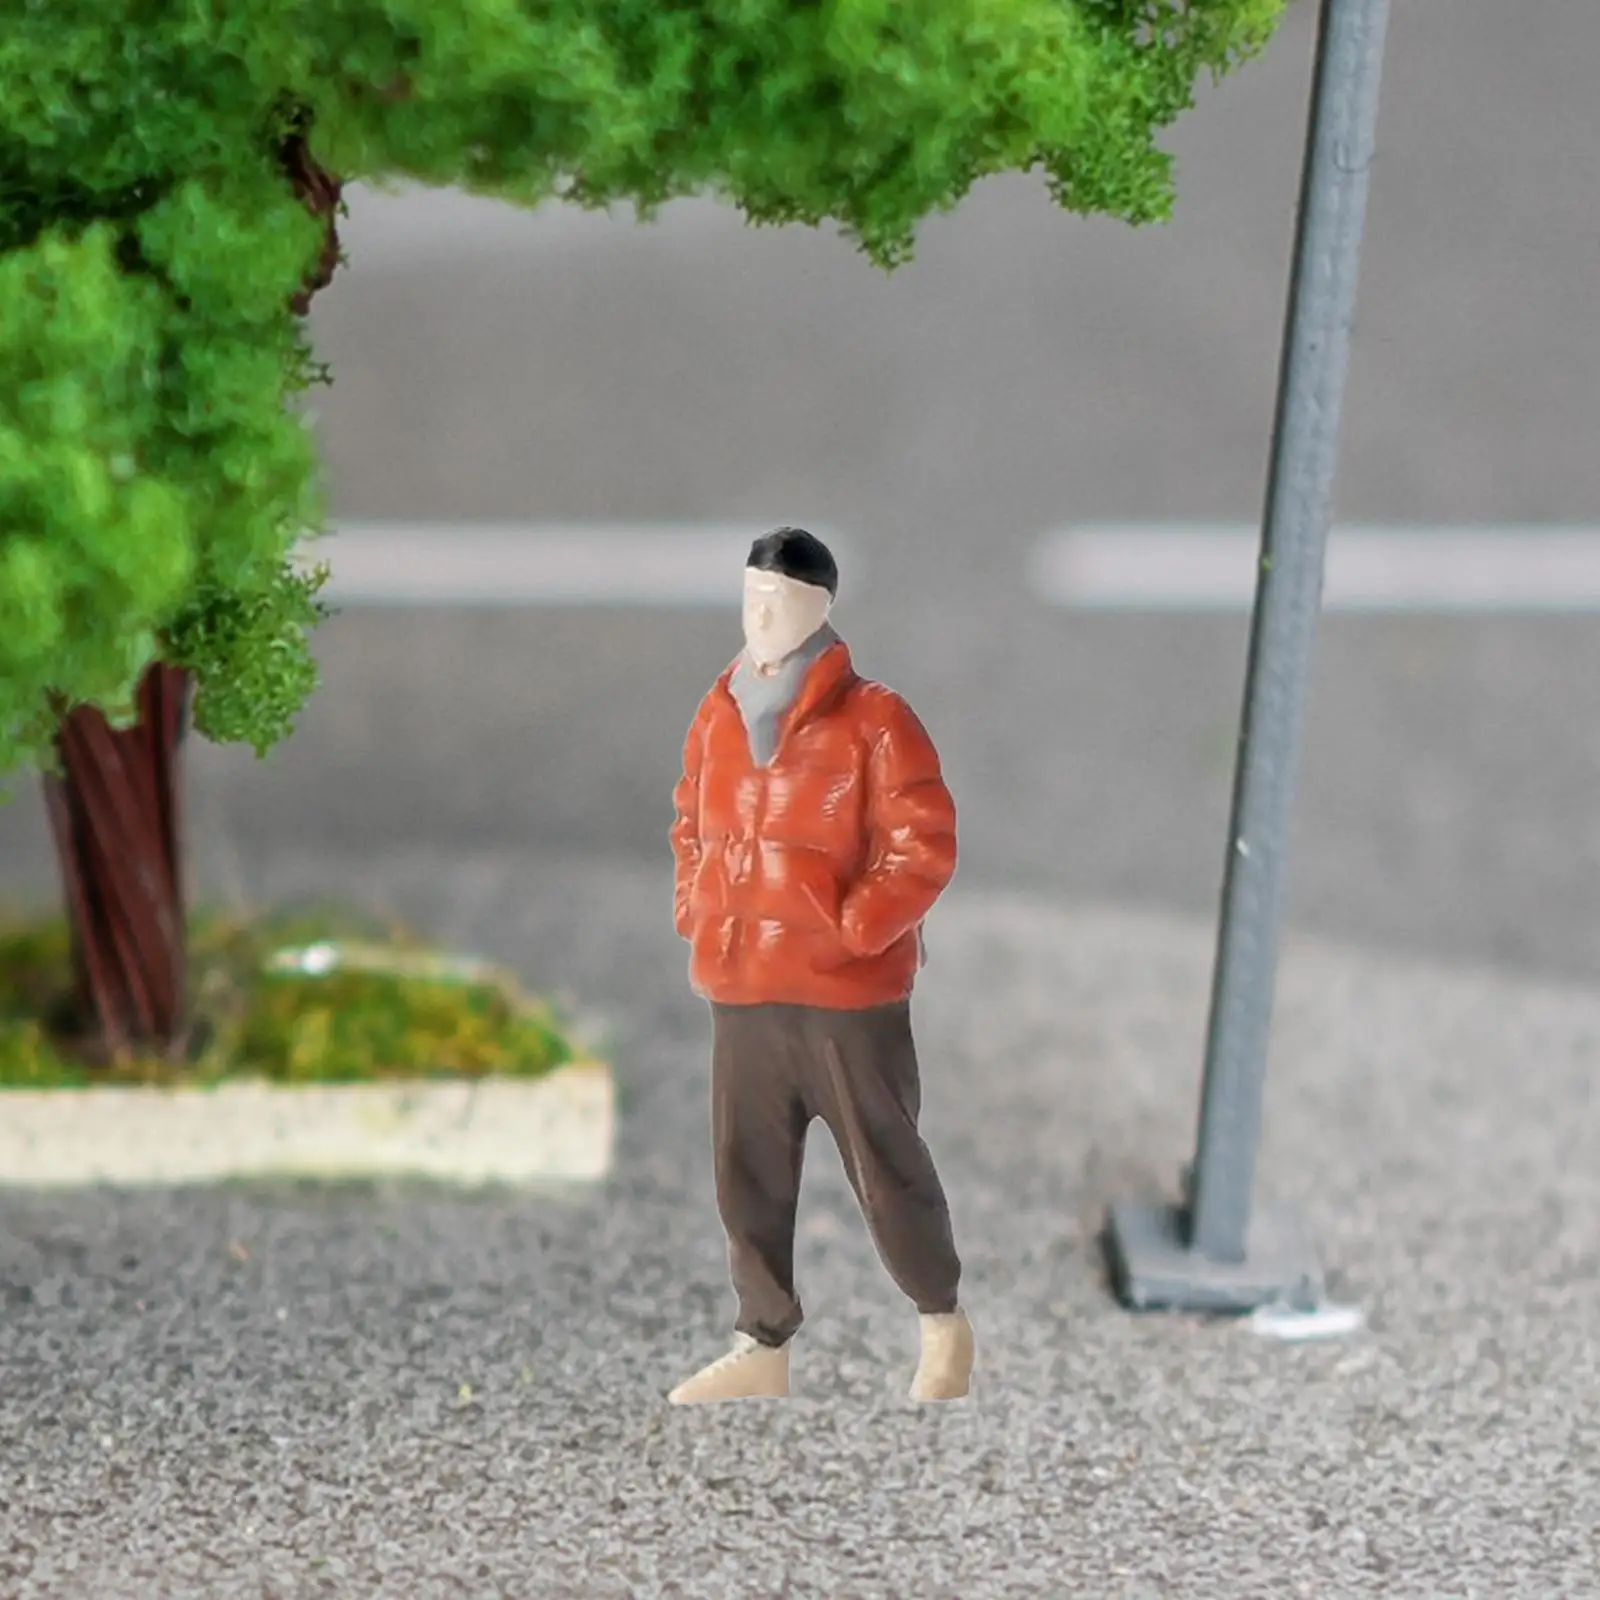 Hand Painted 1:64 Boy Figure S Gauge Dioramas Miniature Scenes Movie Props Desktop Ornament Layout Micro Landscape Decoration